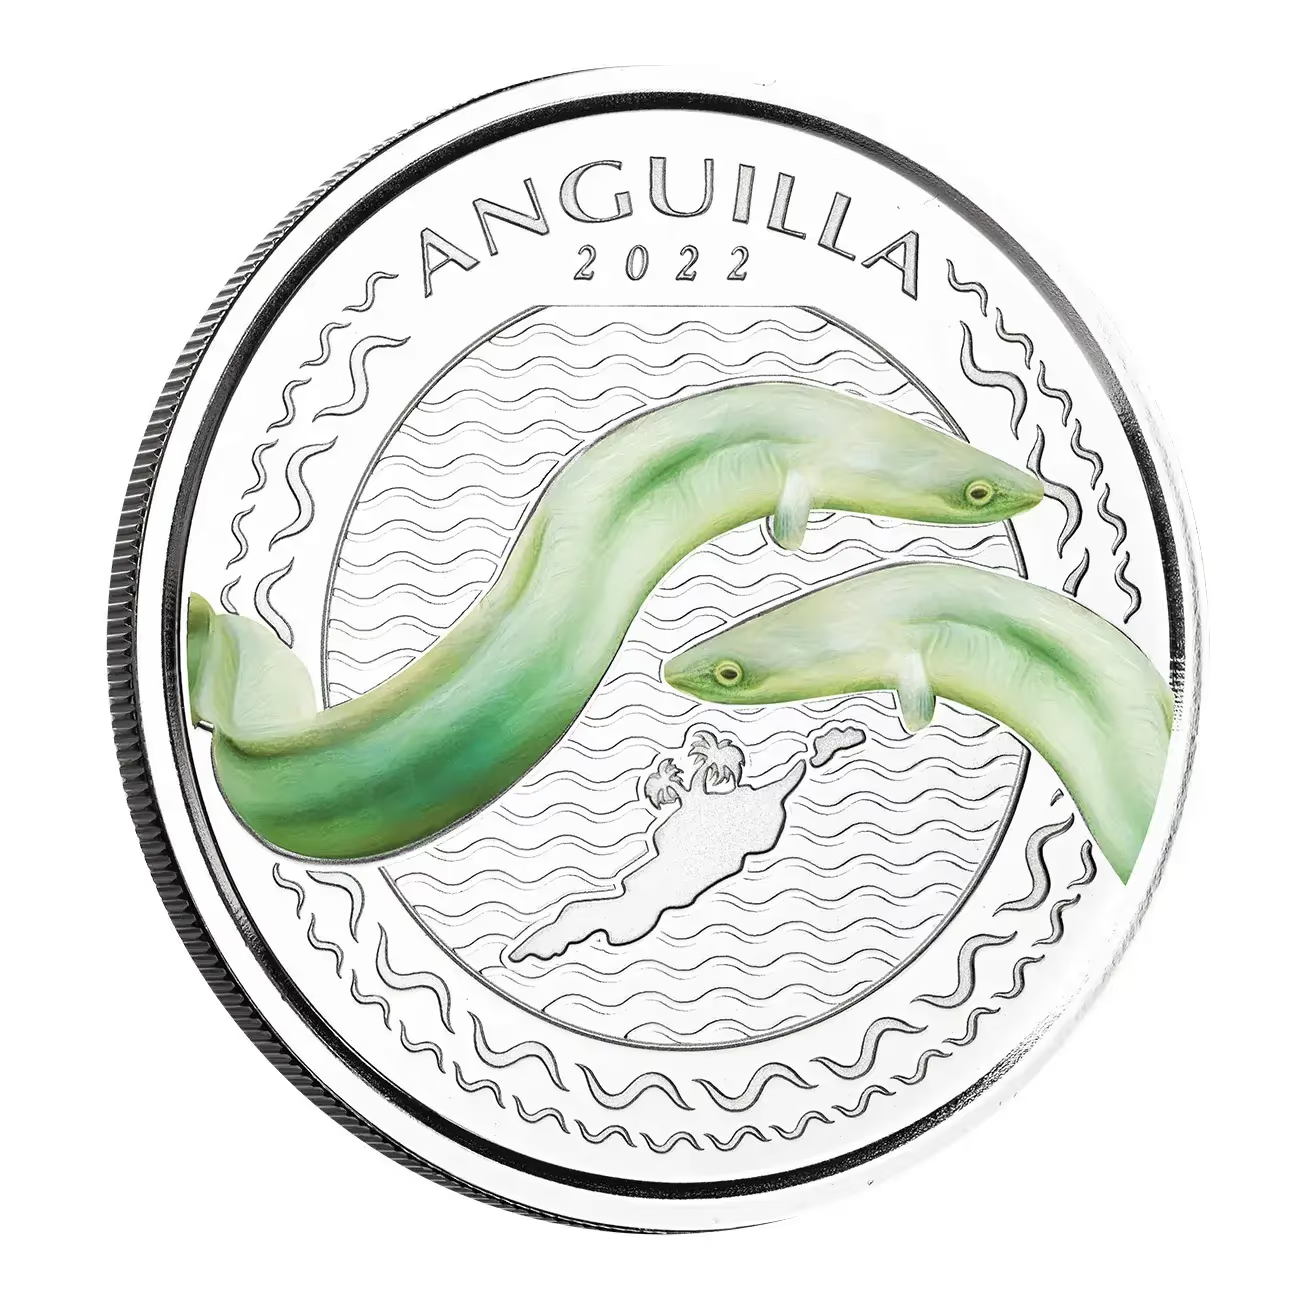 1 Oz Silver Coin 2022 EC8 Anguilla $2 Scottsdale Mint Color Proof - Eel-classypw.com-1